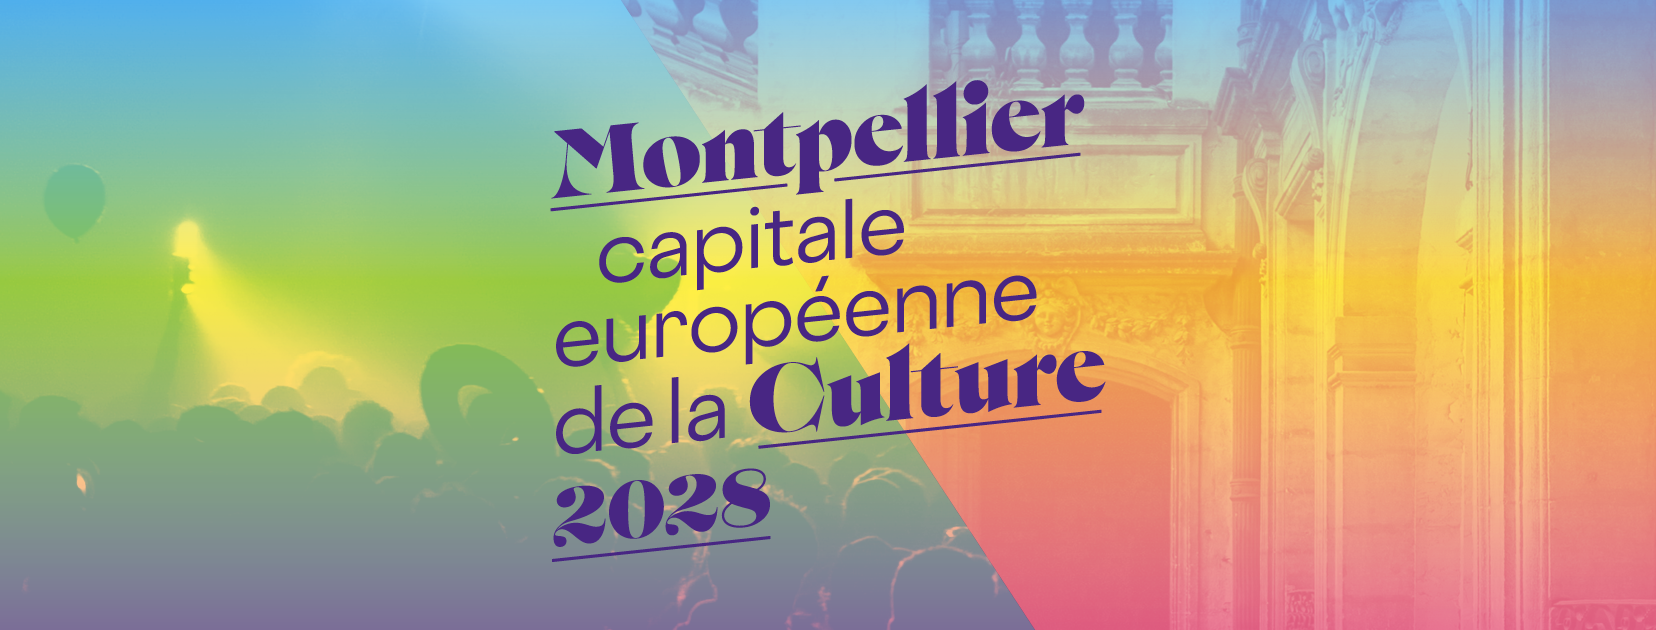 Montpellier capitale européenne de la culture 2028